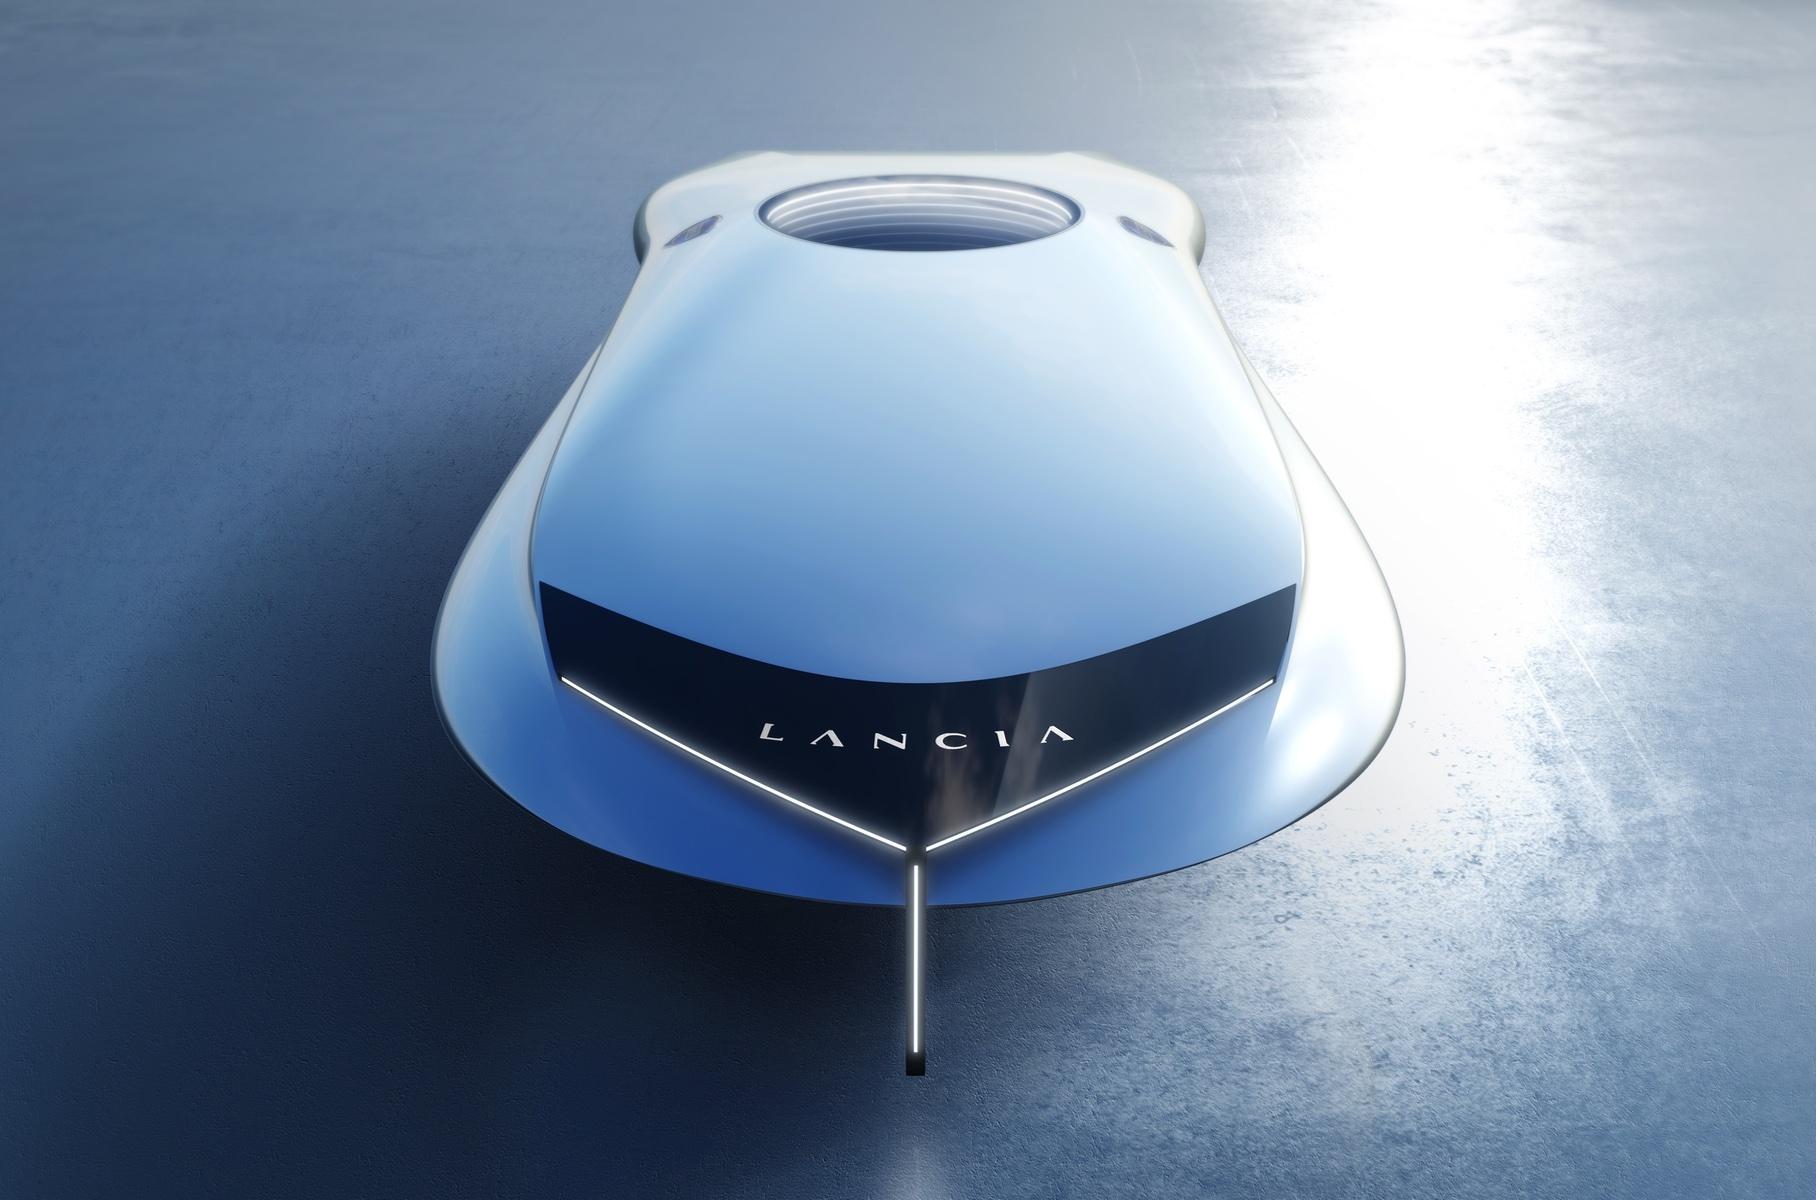 Lancia представила новий логотип та фірмовий стиль